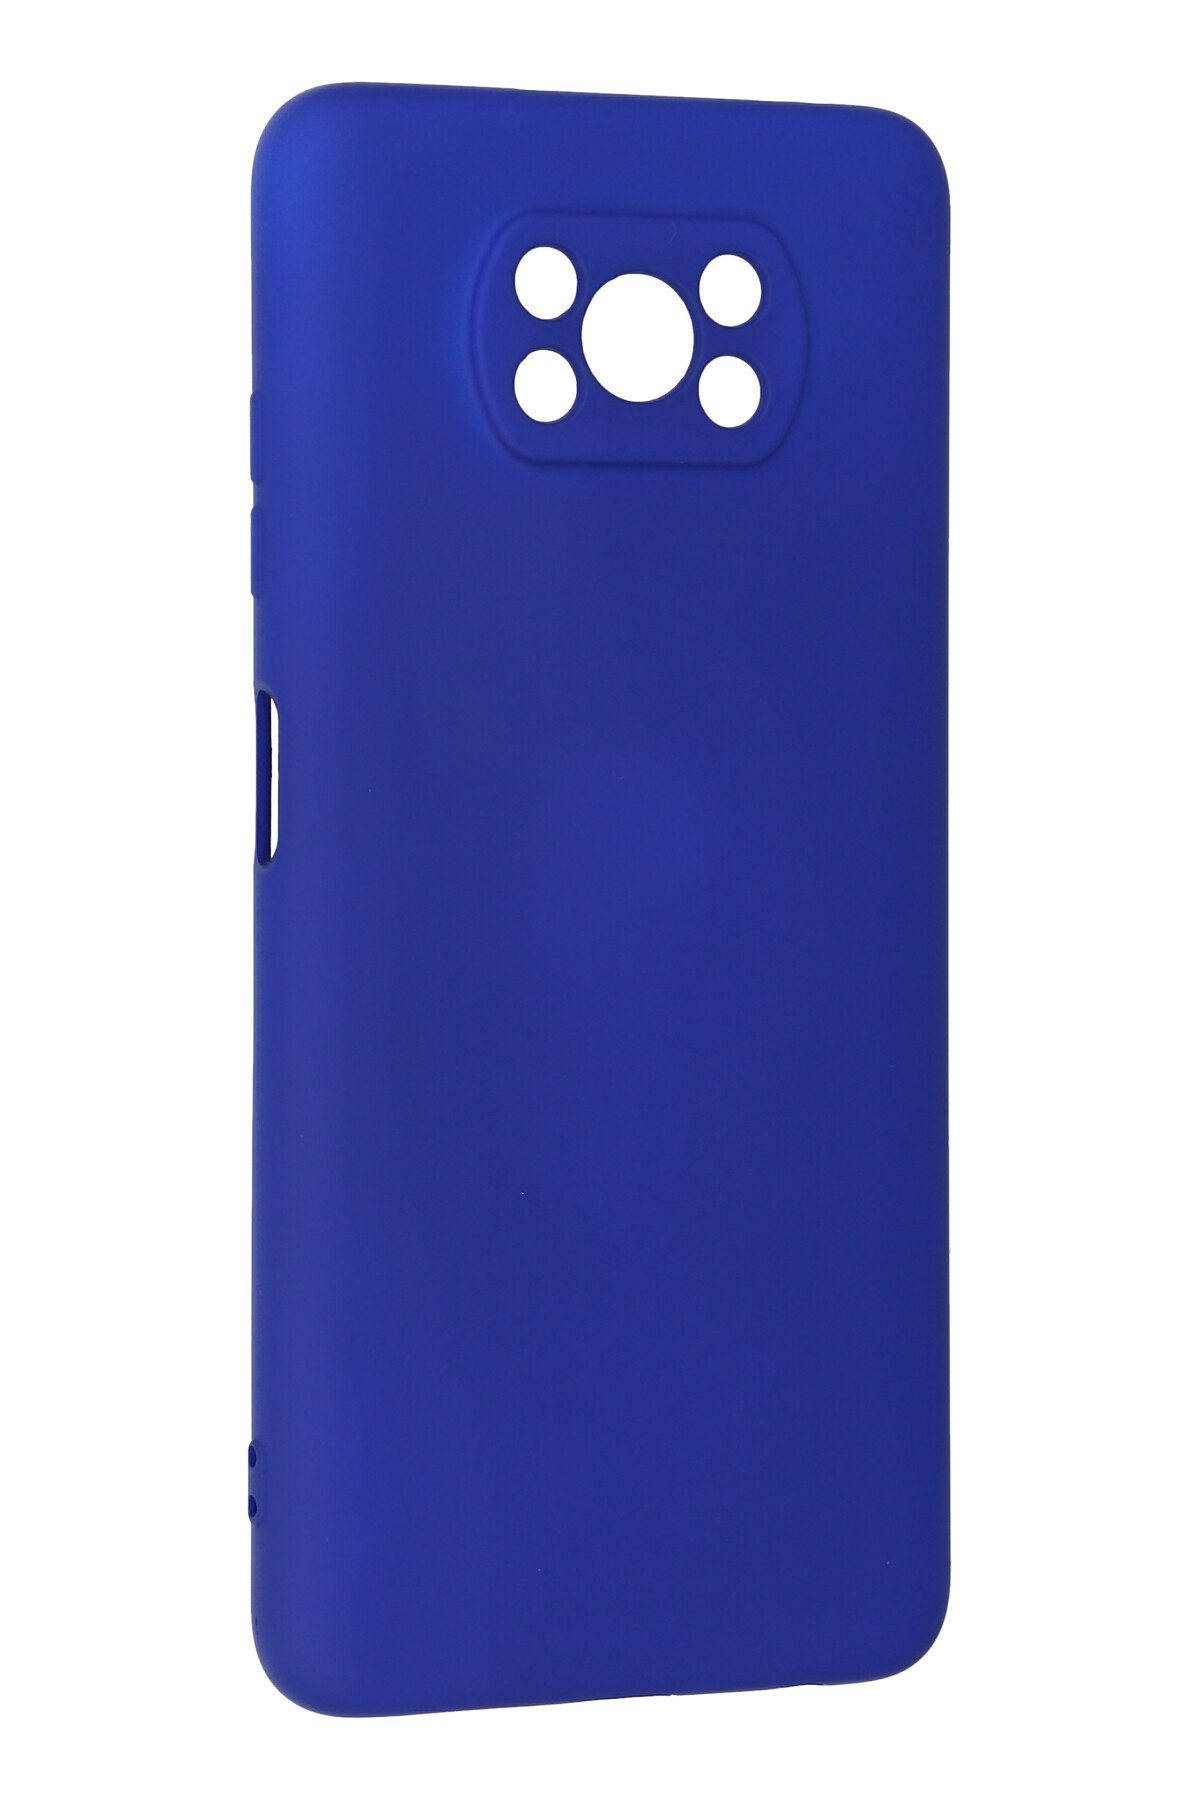 Newface Xiaomi Pocophone X3 Kılıf Platin Silikon - Mavi